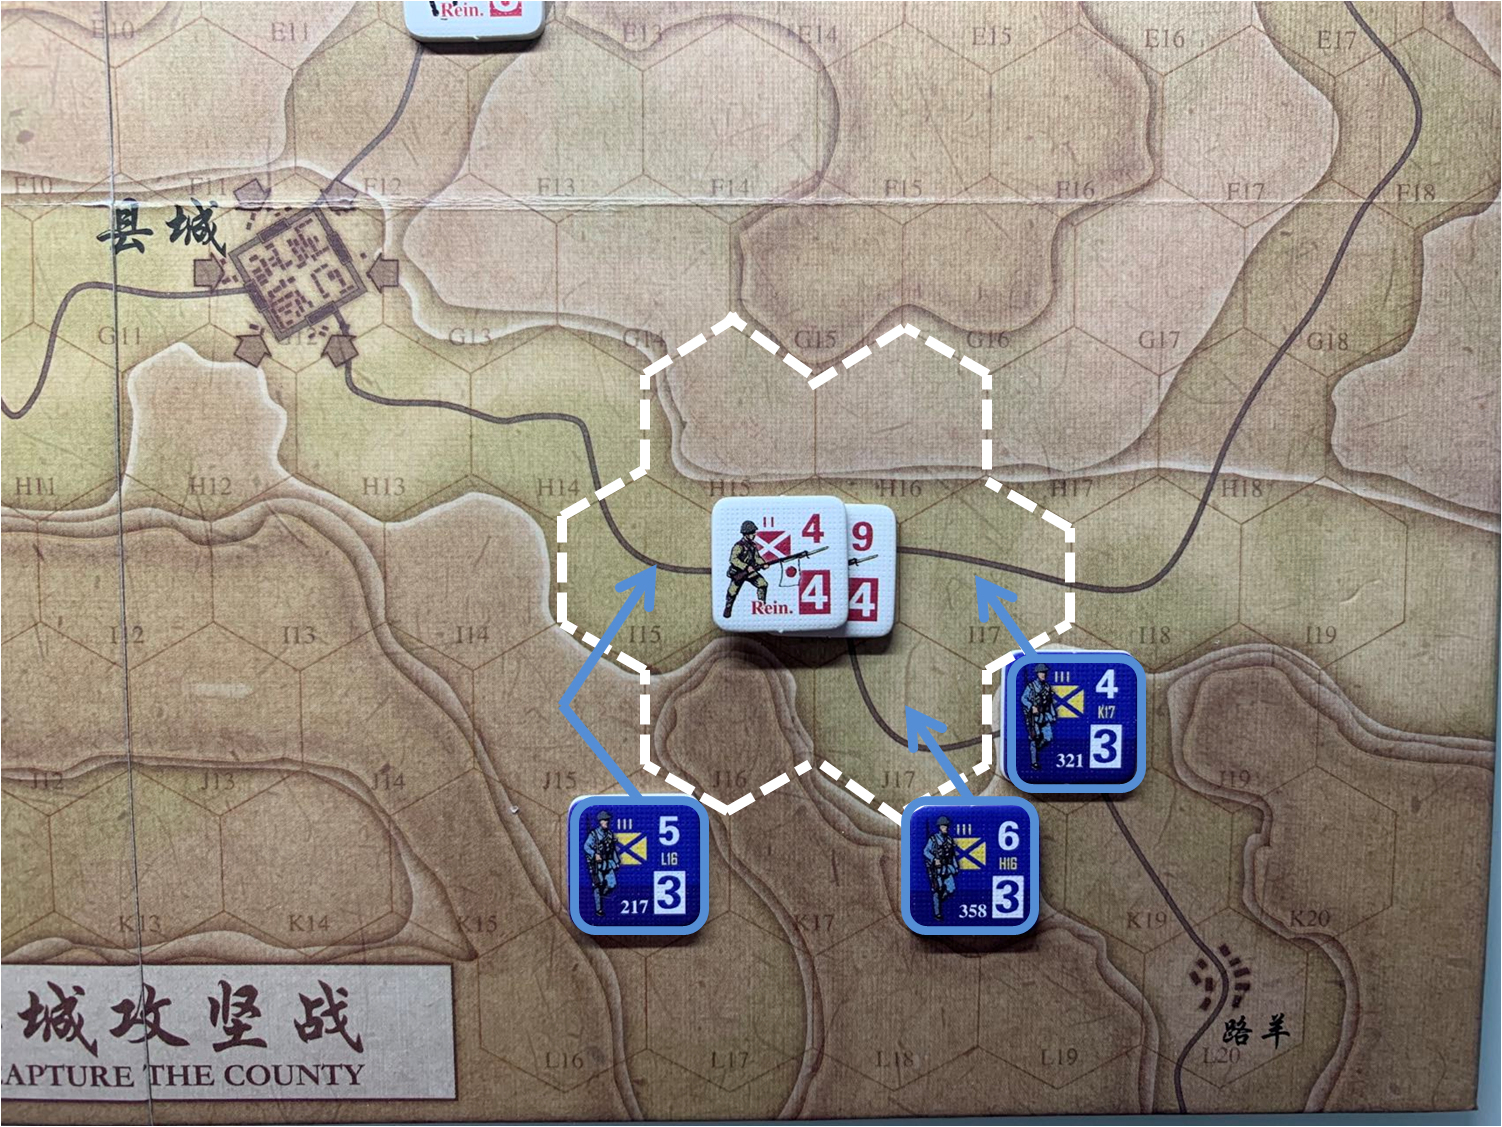 第四回合国军正规军部队对于移动命令1的执行计划，及对应方向日军增援部队控制区覆盖范围